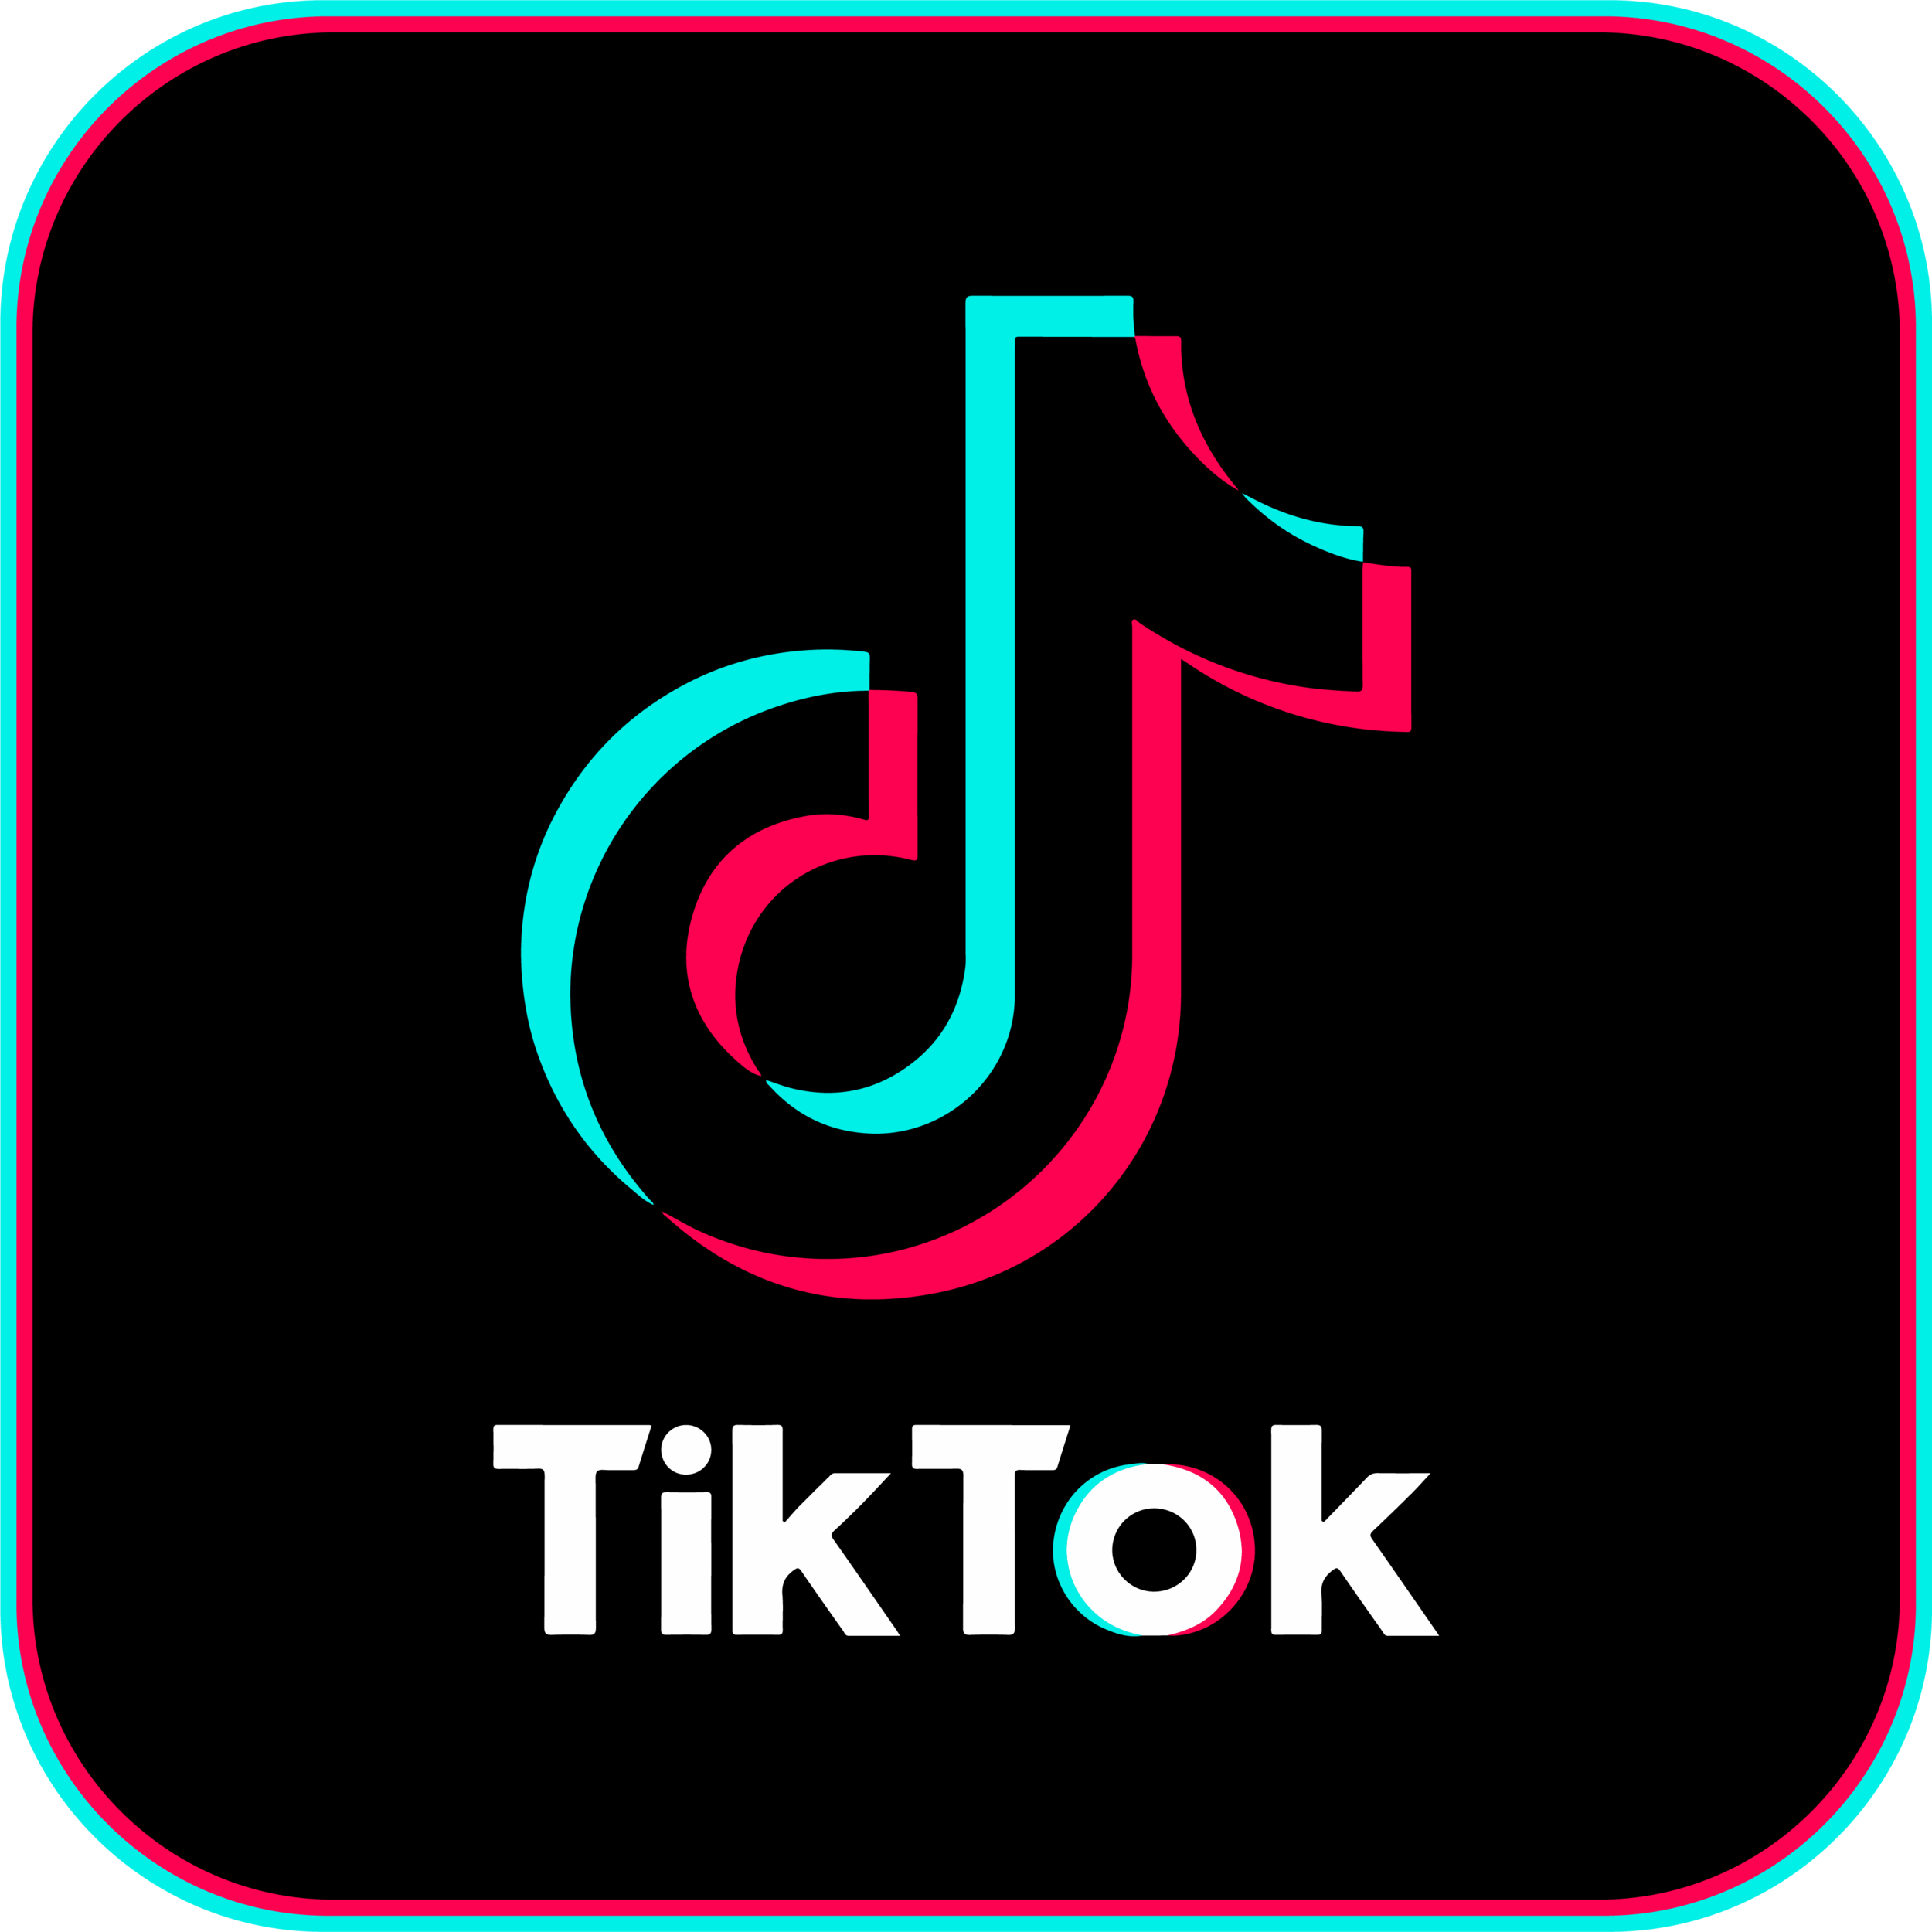 TikTok: Hãy khám phá thế giới đầy sáng tạo của TikTok, nơi mà những video ngắn được chia sẻ một cách dễ dàng và nhanh chóng. Từ những bài nhảy đầy sôi động cho đến những chiếc mặt nạ đầy sáng tạo, TikTok sẽ mang đến cho bạn những giây phút giải trí tuyệt vời.